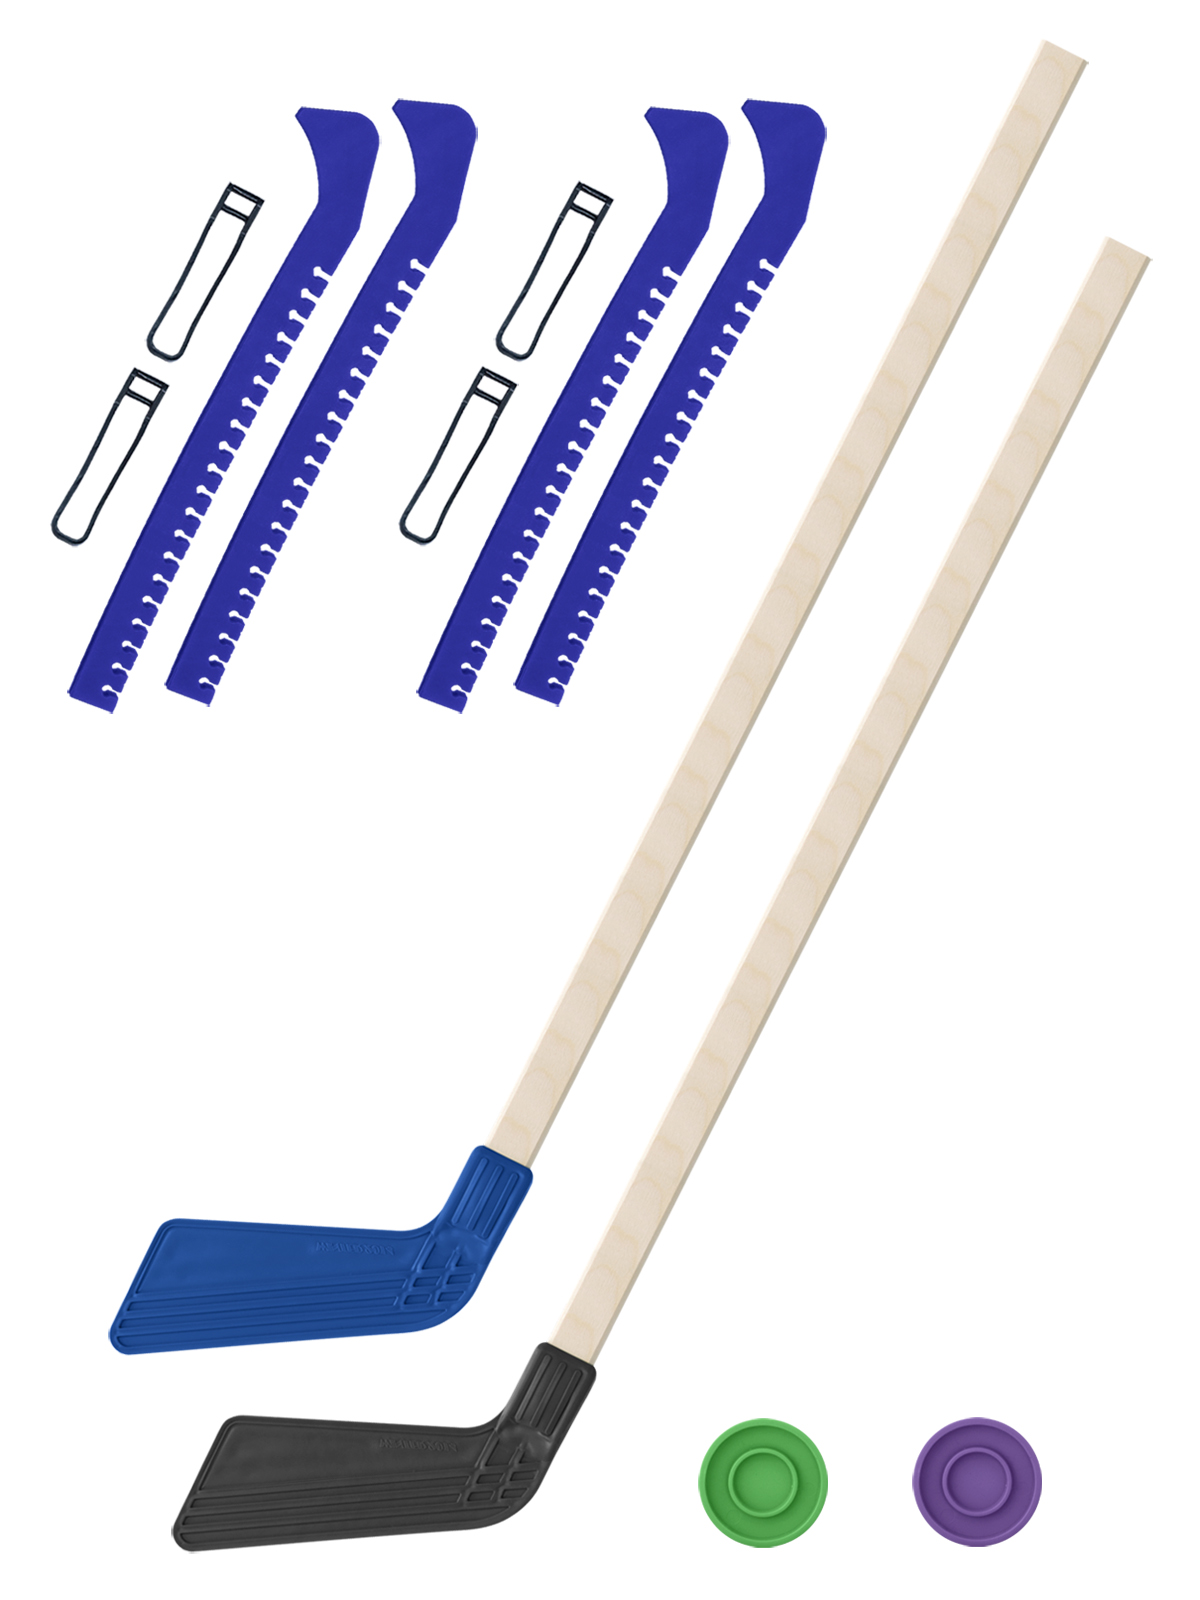 Хоккейный набор Задира-плюс клюшка детская(син+чер)2шт+2 шайбы+чехлы для коньков син 2шт